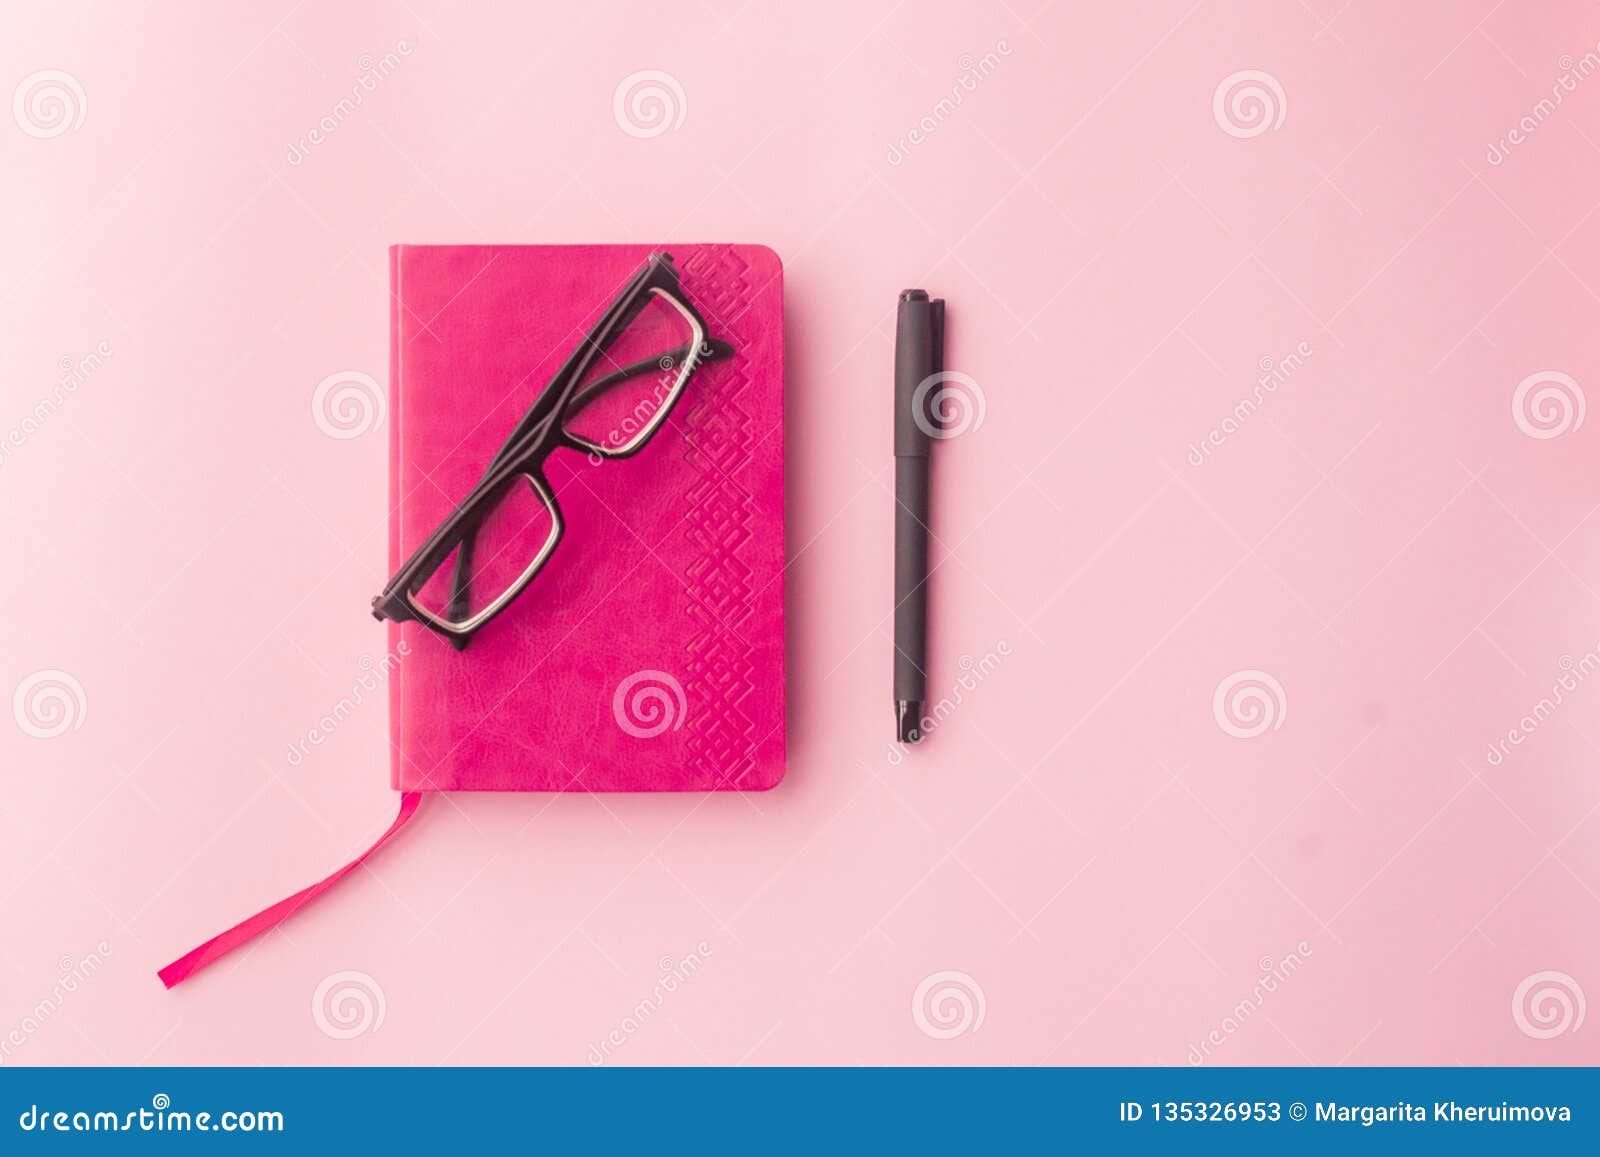 6 розовый дневник. Ручки на розовом фоне. Розовый дневник с замочком без фона. Личный дневник розовый Формат а5. Картинки с разными боксами дневниками ручками.